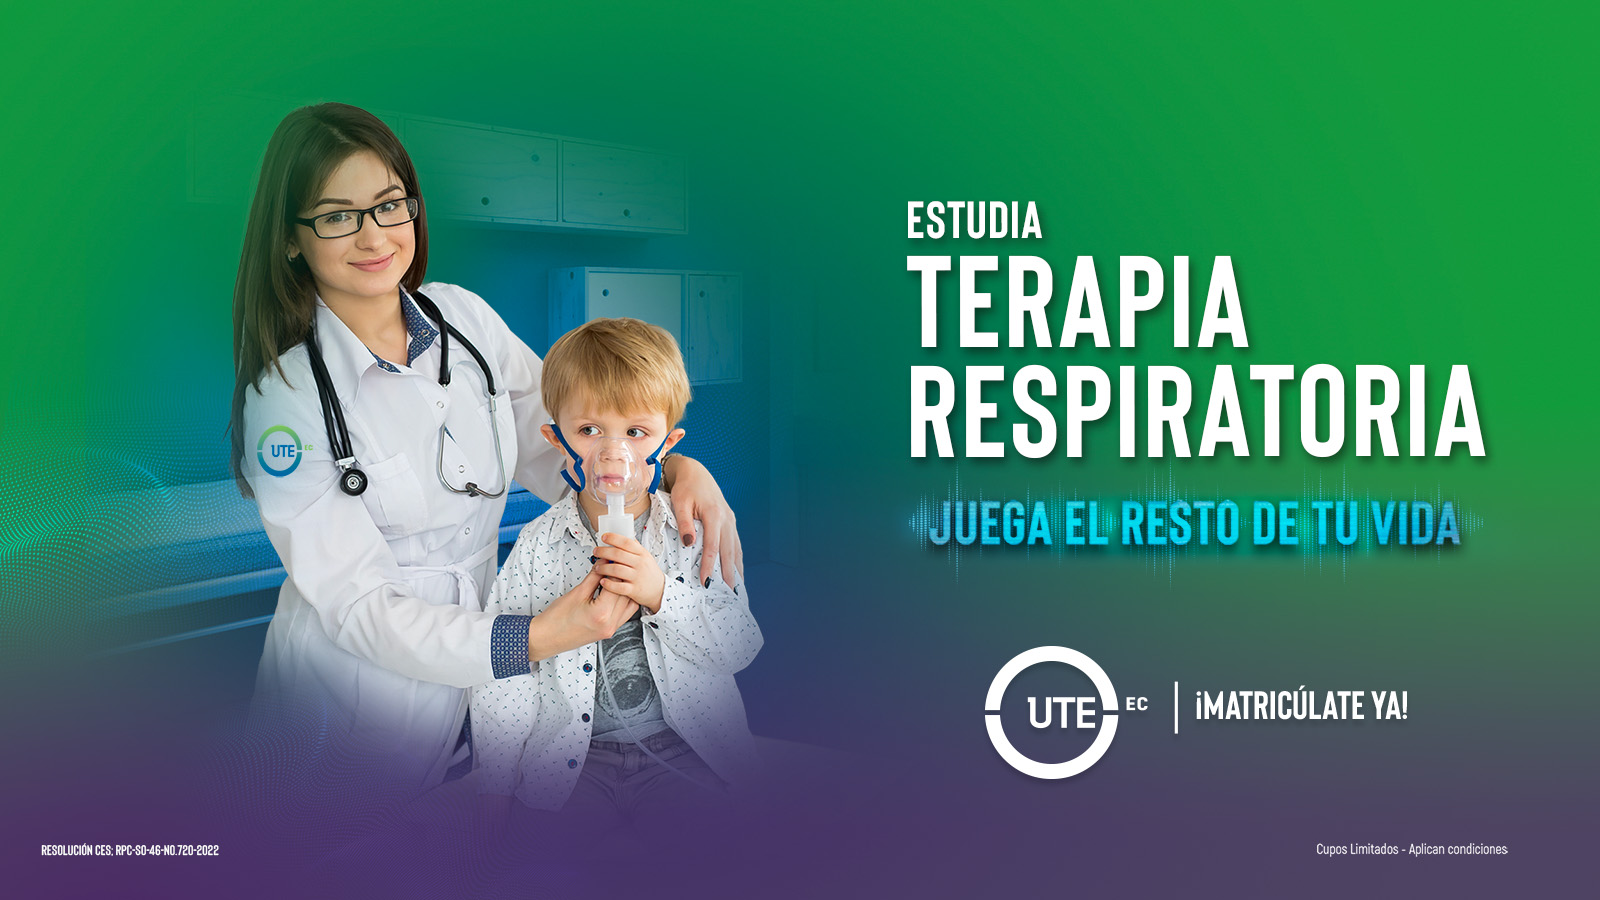 Carrera en Terapia Respiratoria - Universidad UTE Admisiones